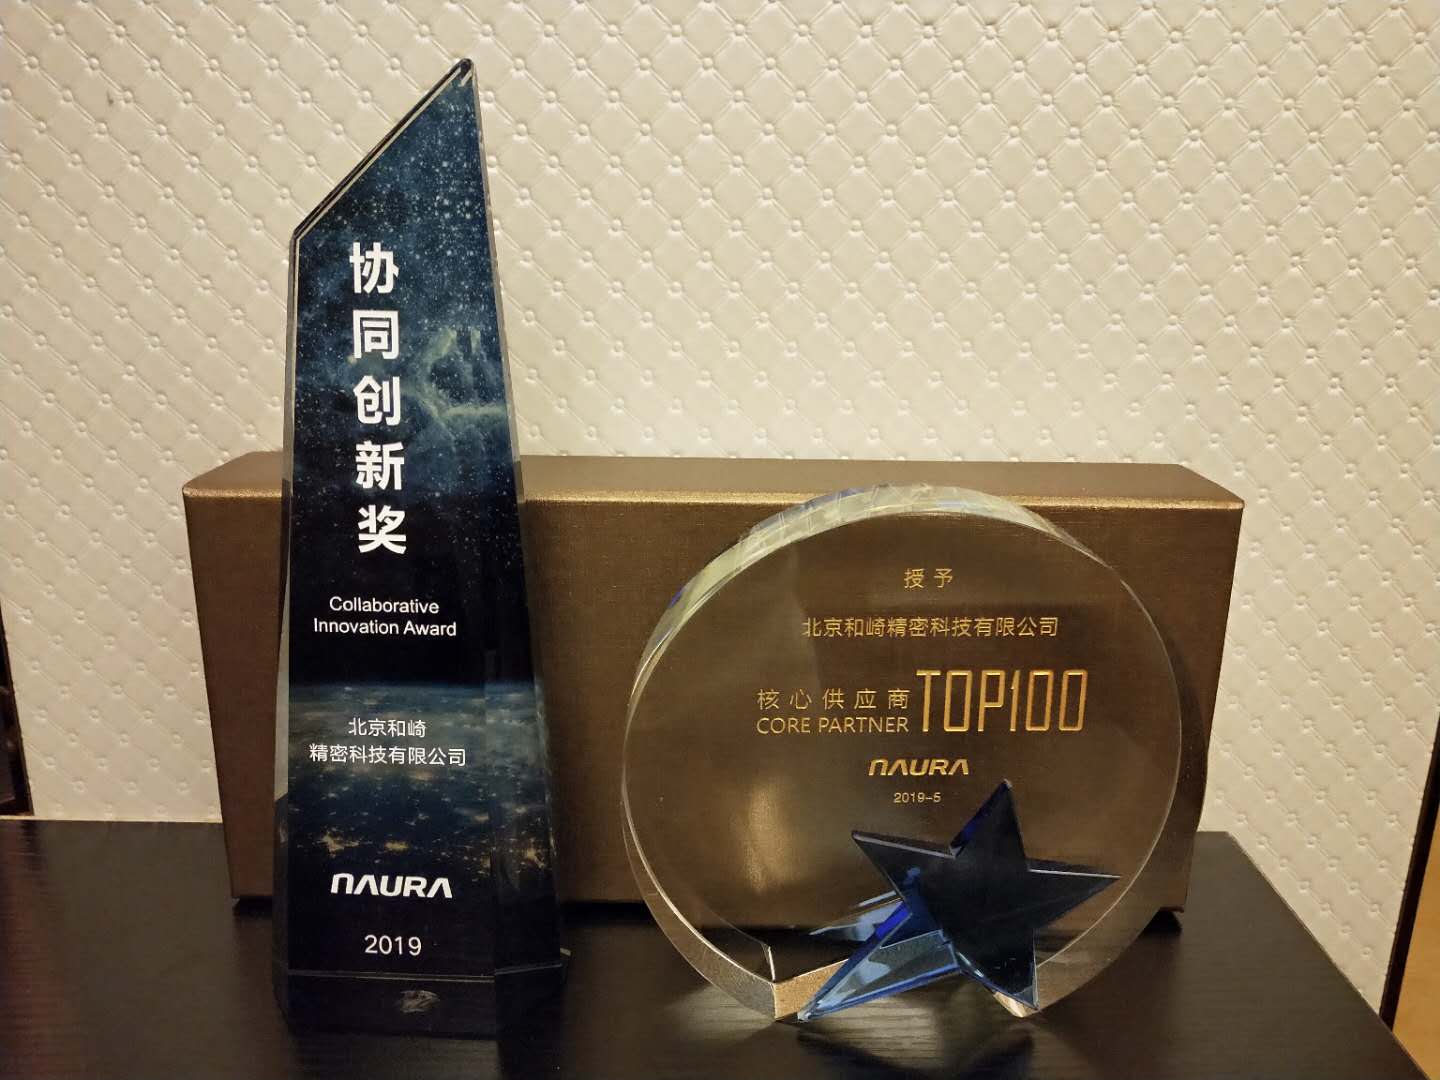 北京和崎连续2年被北方华创授予“TOP100 核心供应商”和“协同创新奖”